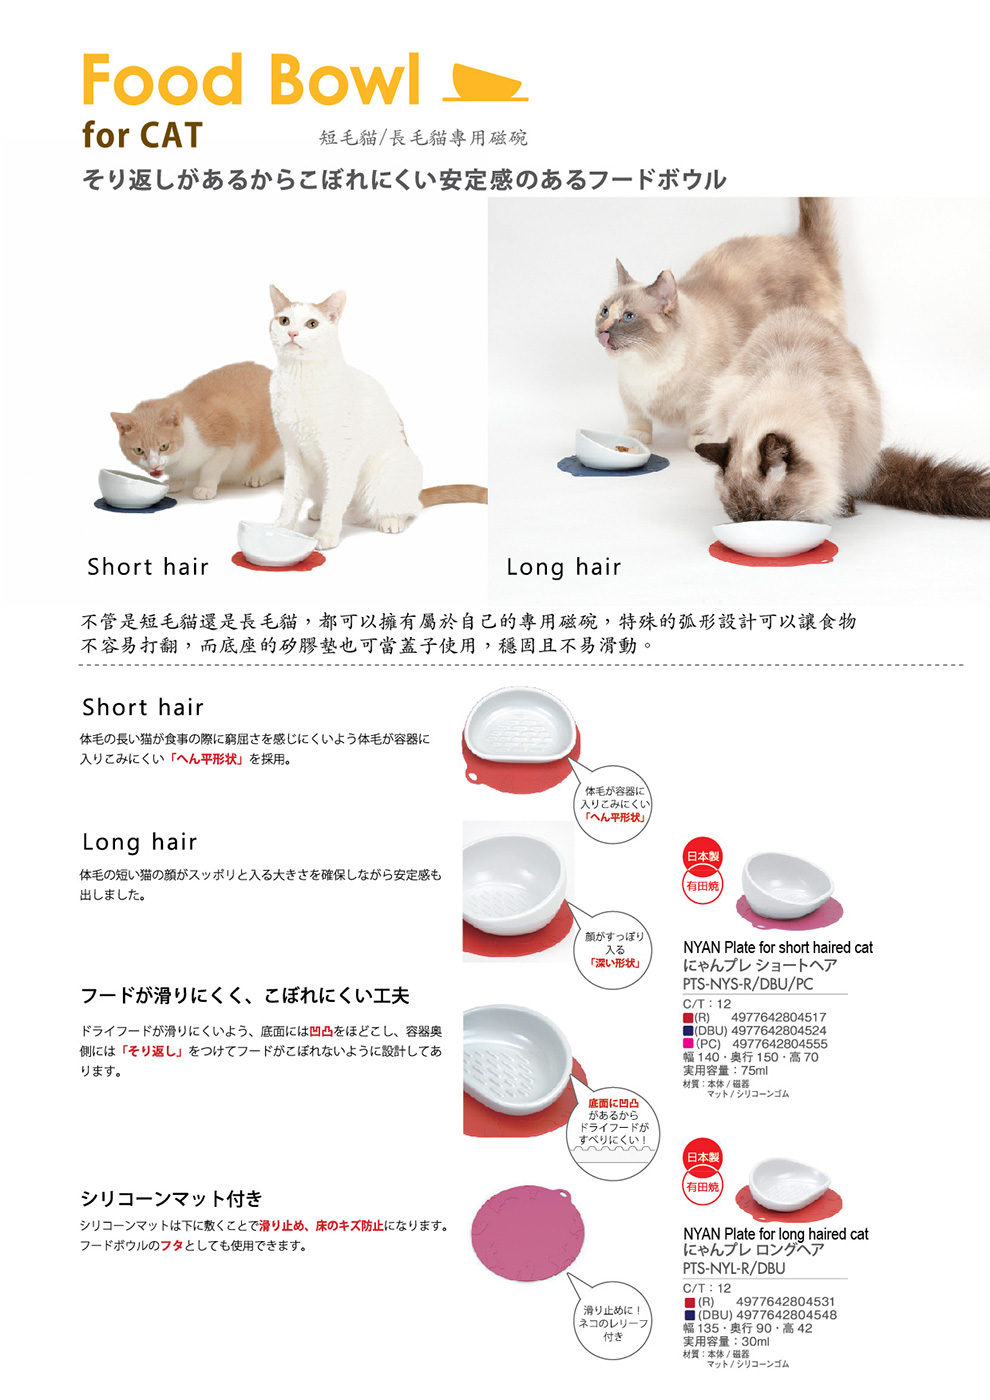 HARIO, Pet goods, Made in Japan, Cat, Food Bowl, Short hair, Long hair, PTS-NYS-R, PTS-NYS-DBU, PTS-NYS-PC, PTS-NYL-R, PTS-NYL-DBU